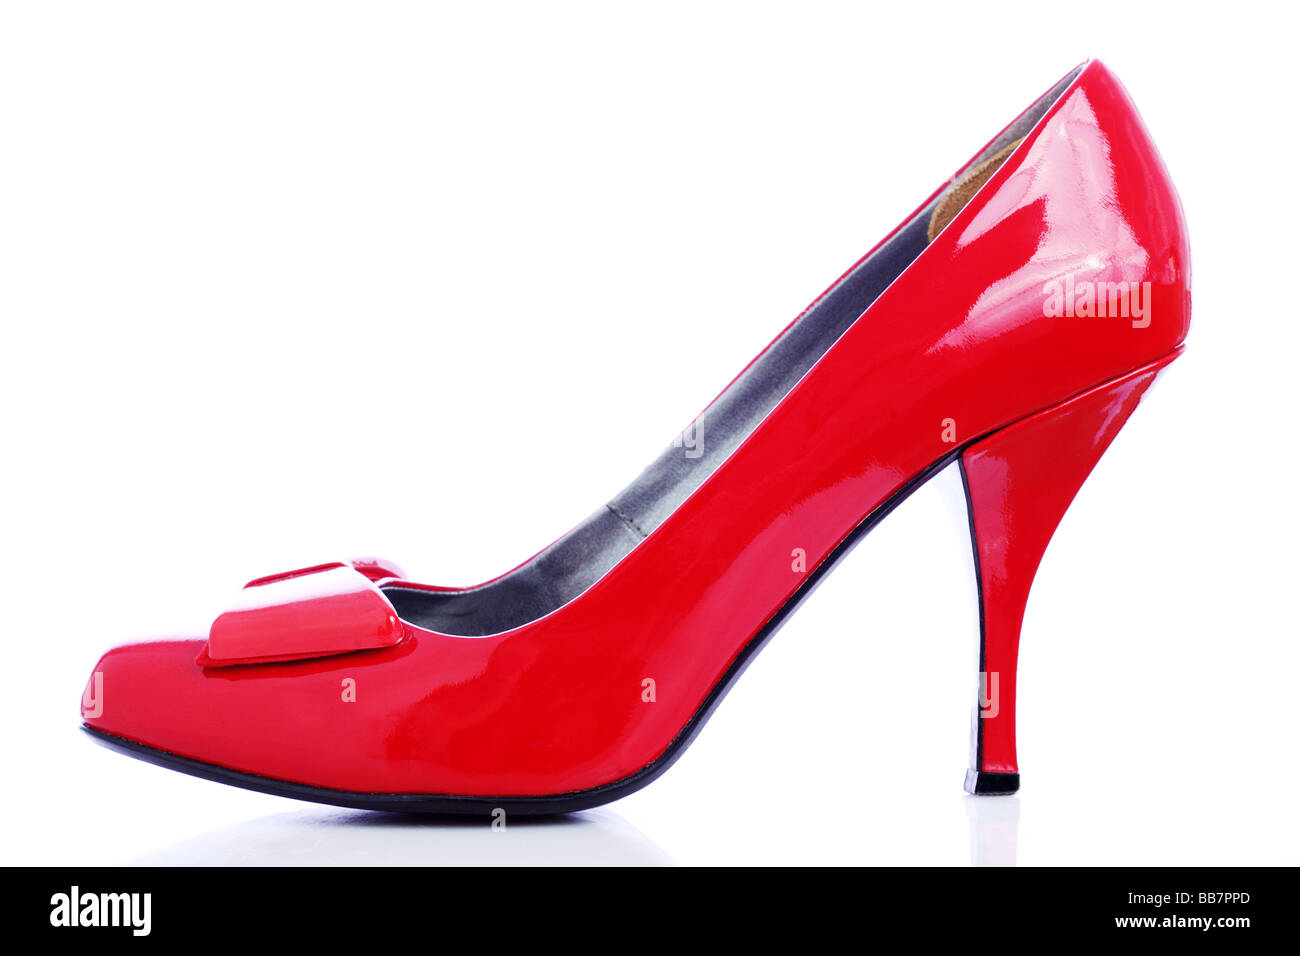 Chaussure haut talon rouge Photo Stock - Alamy